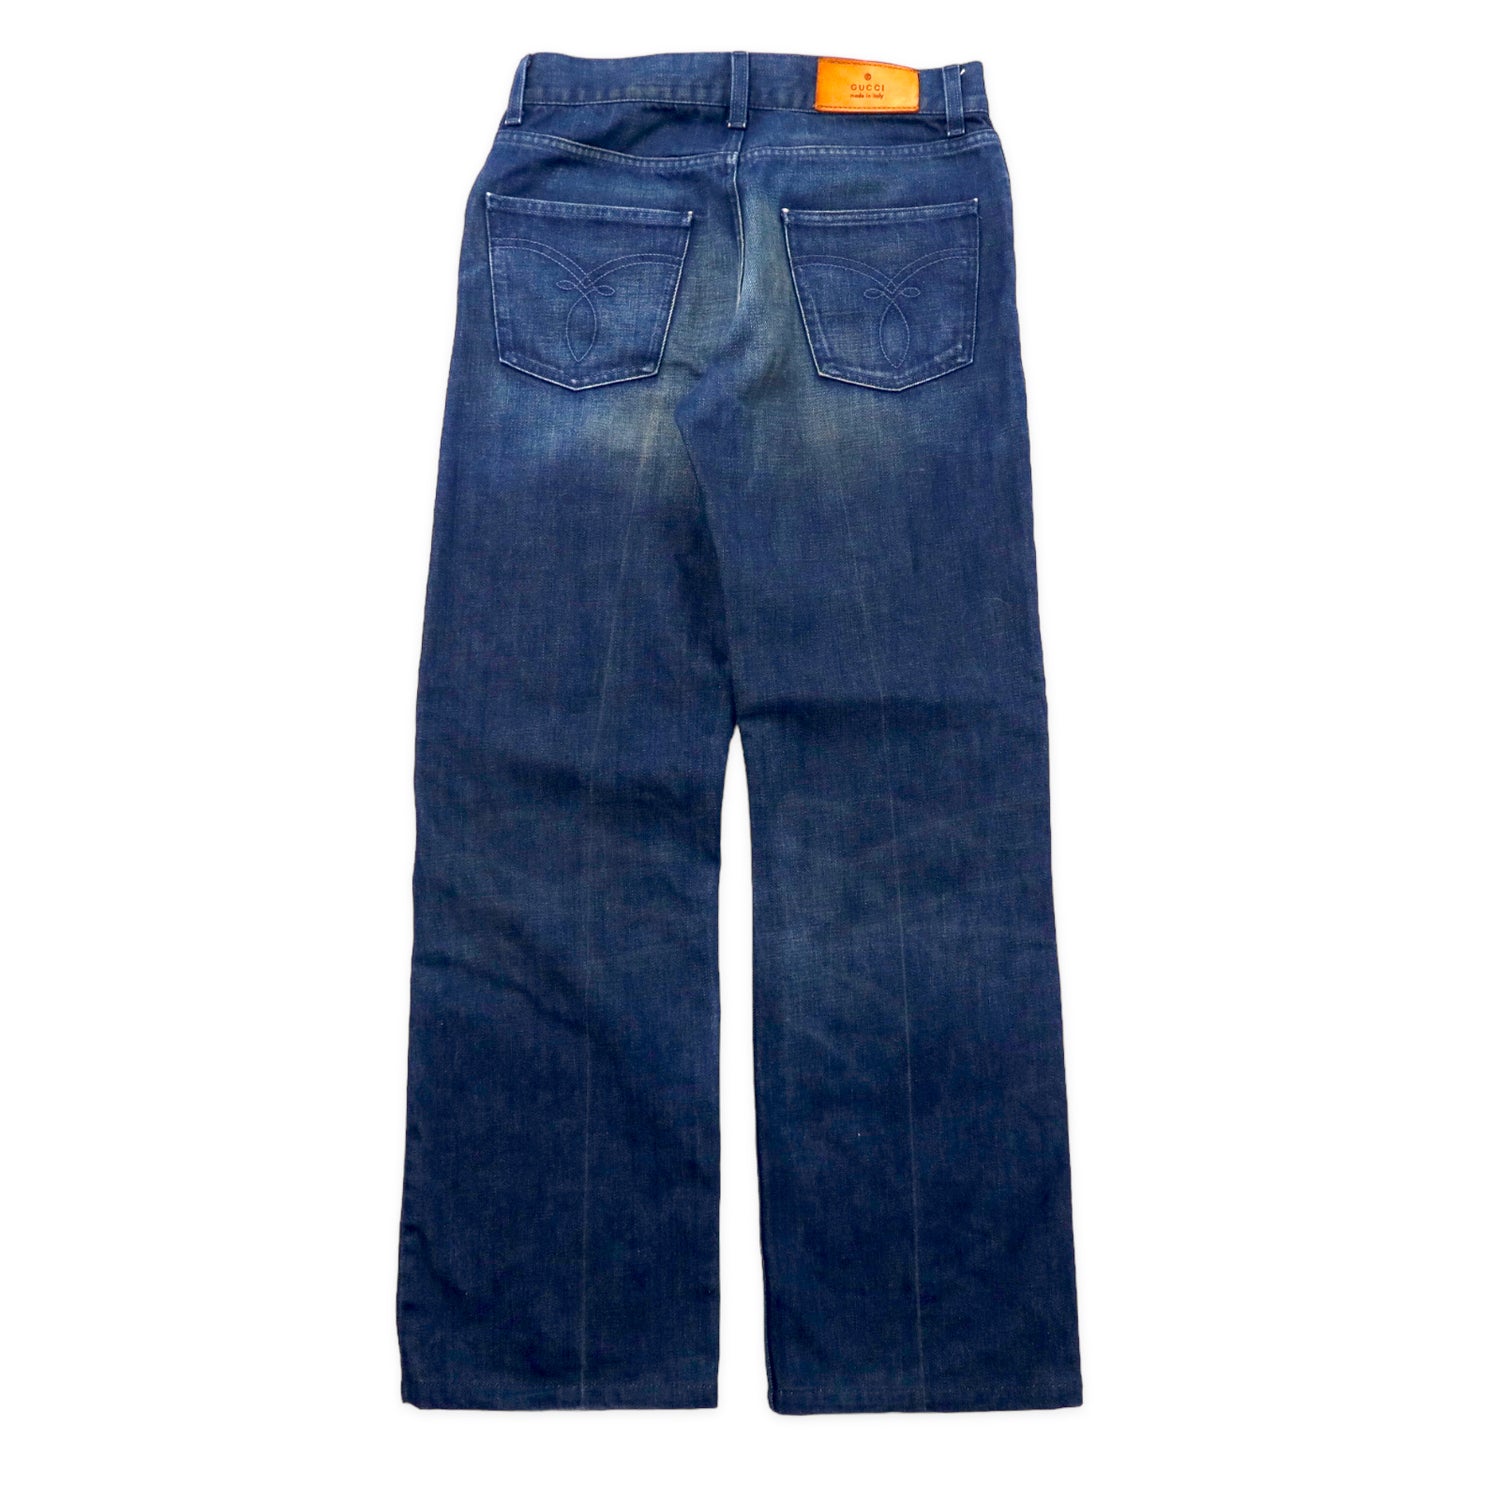 GUCCI Boots Cut Denim PANTS 46 Blue Vintage Processing 124046 